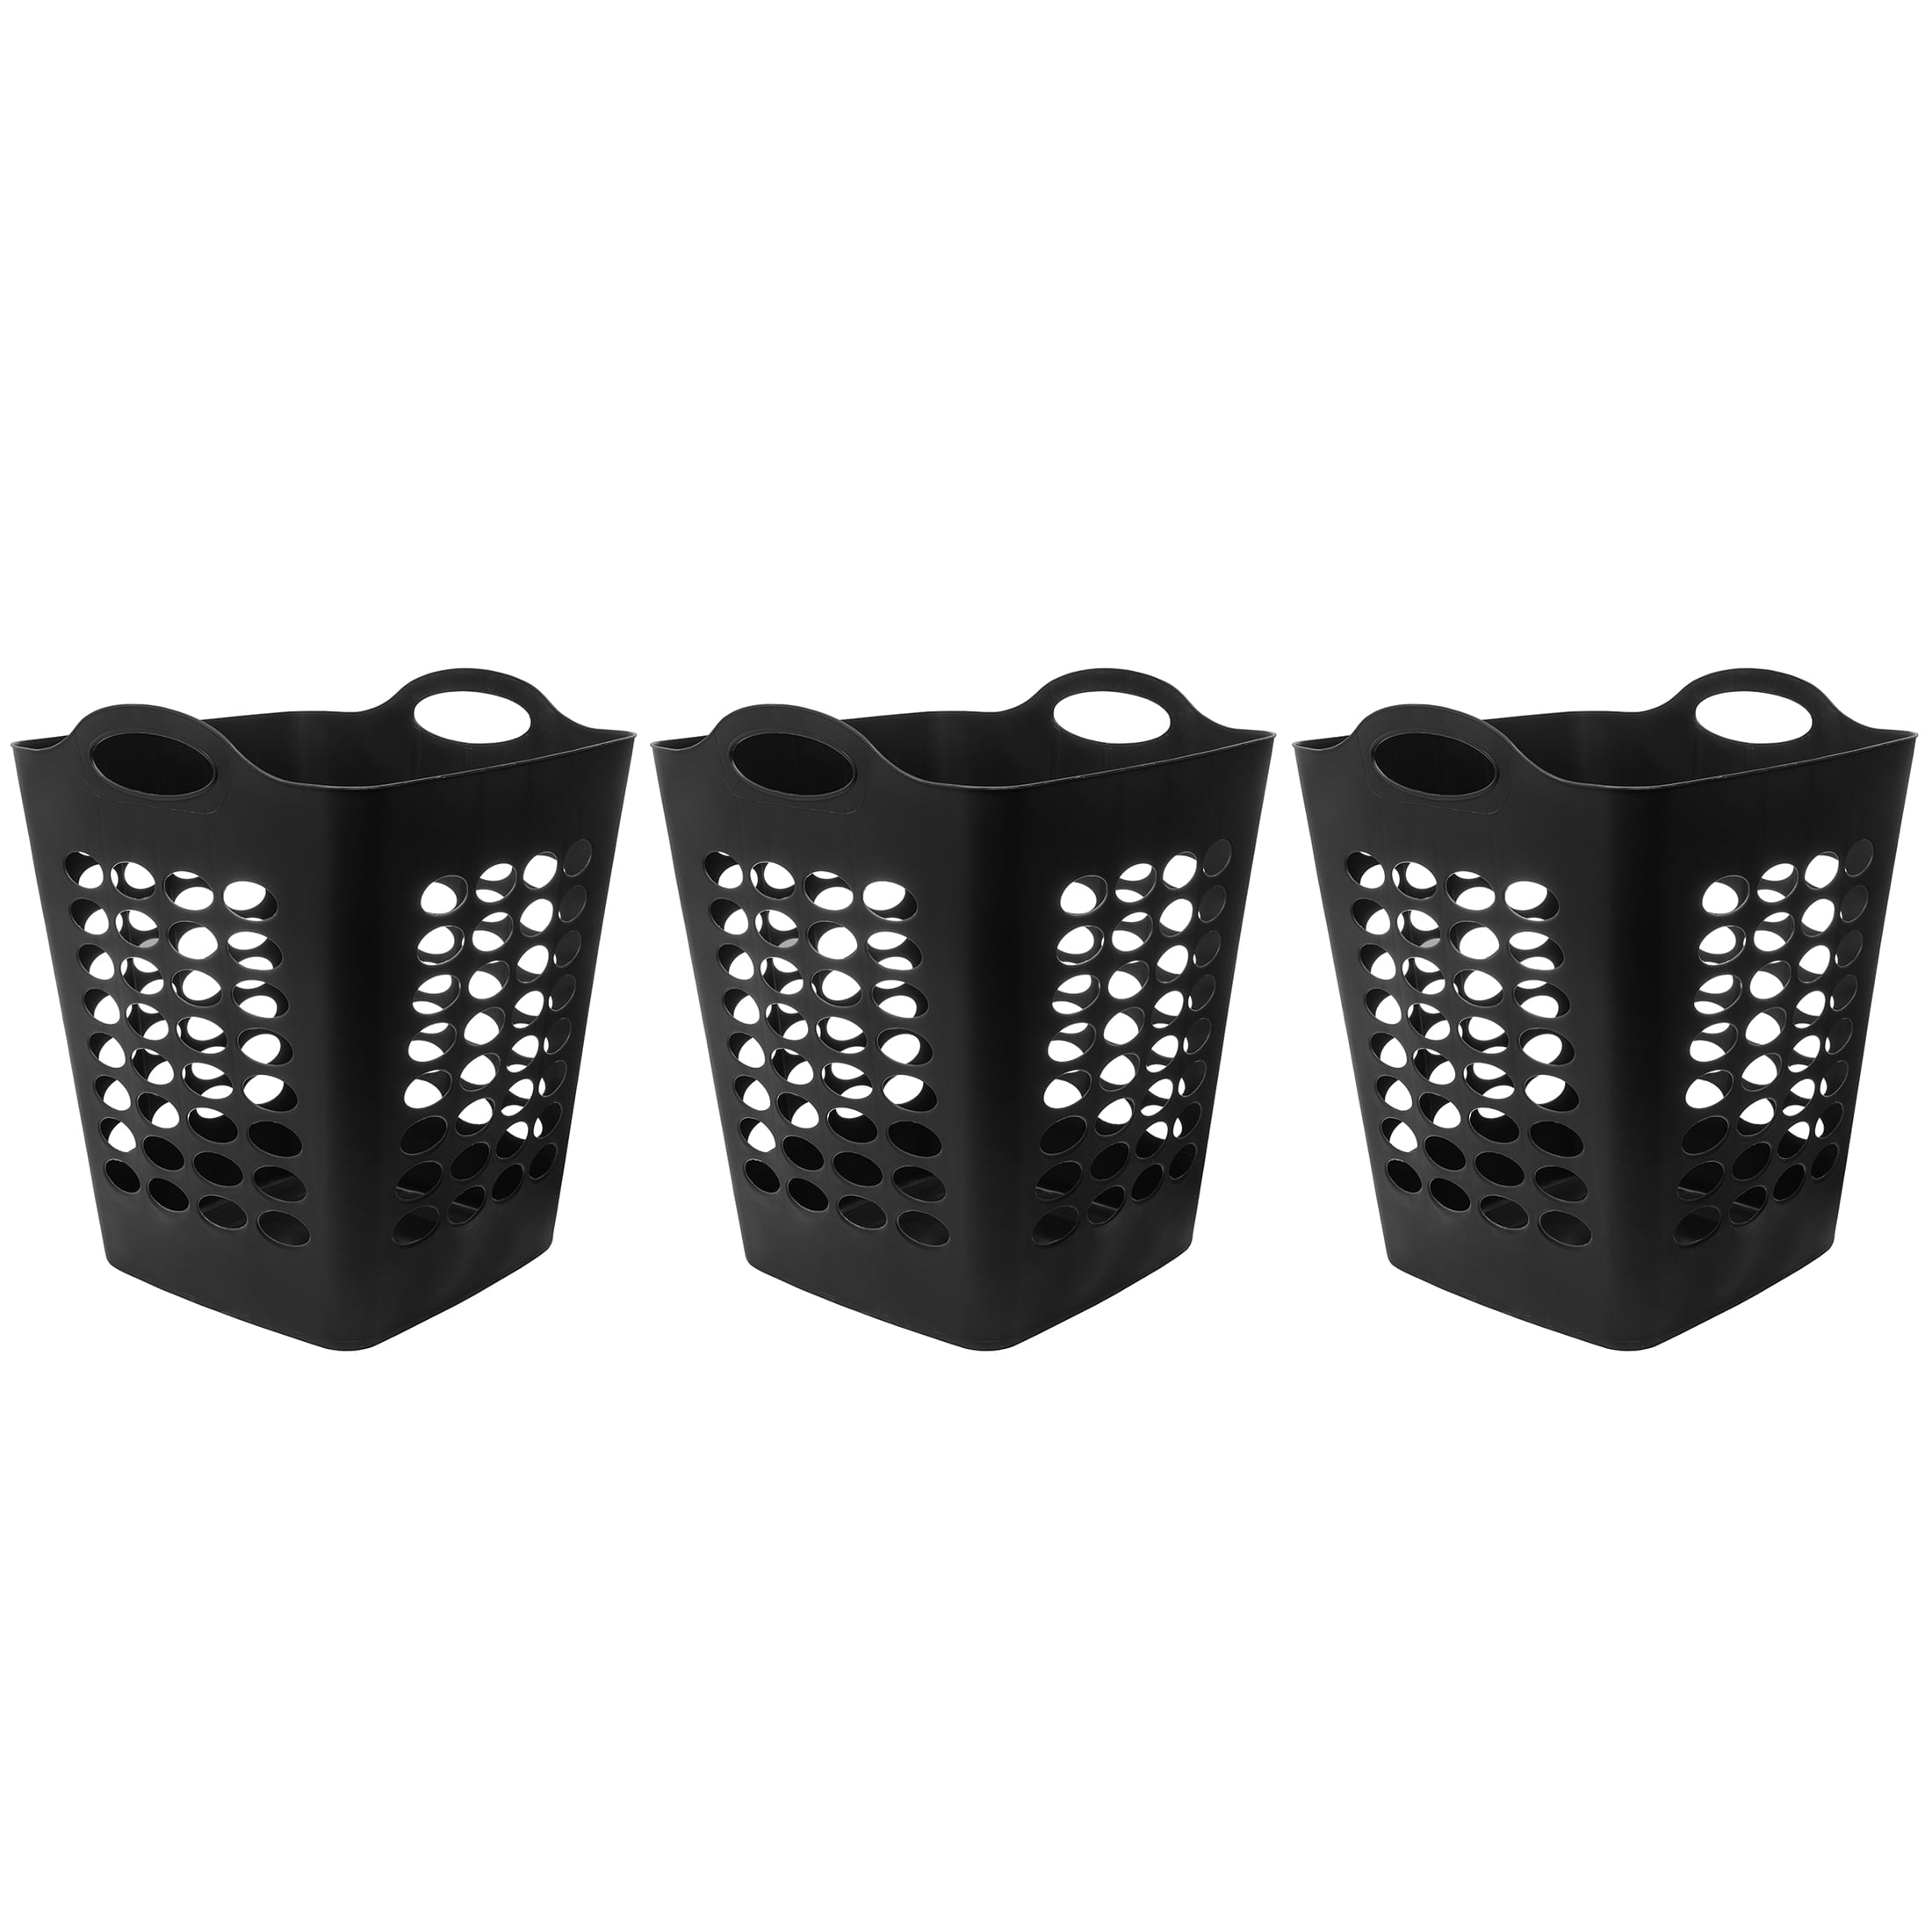 Black 2 Bushel Laundry Hamper Durable Flexible Clothes Plastic Storage Basket 